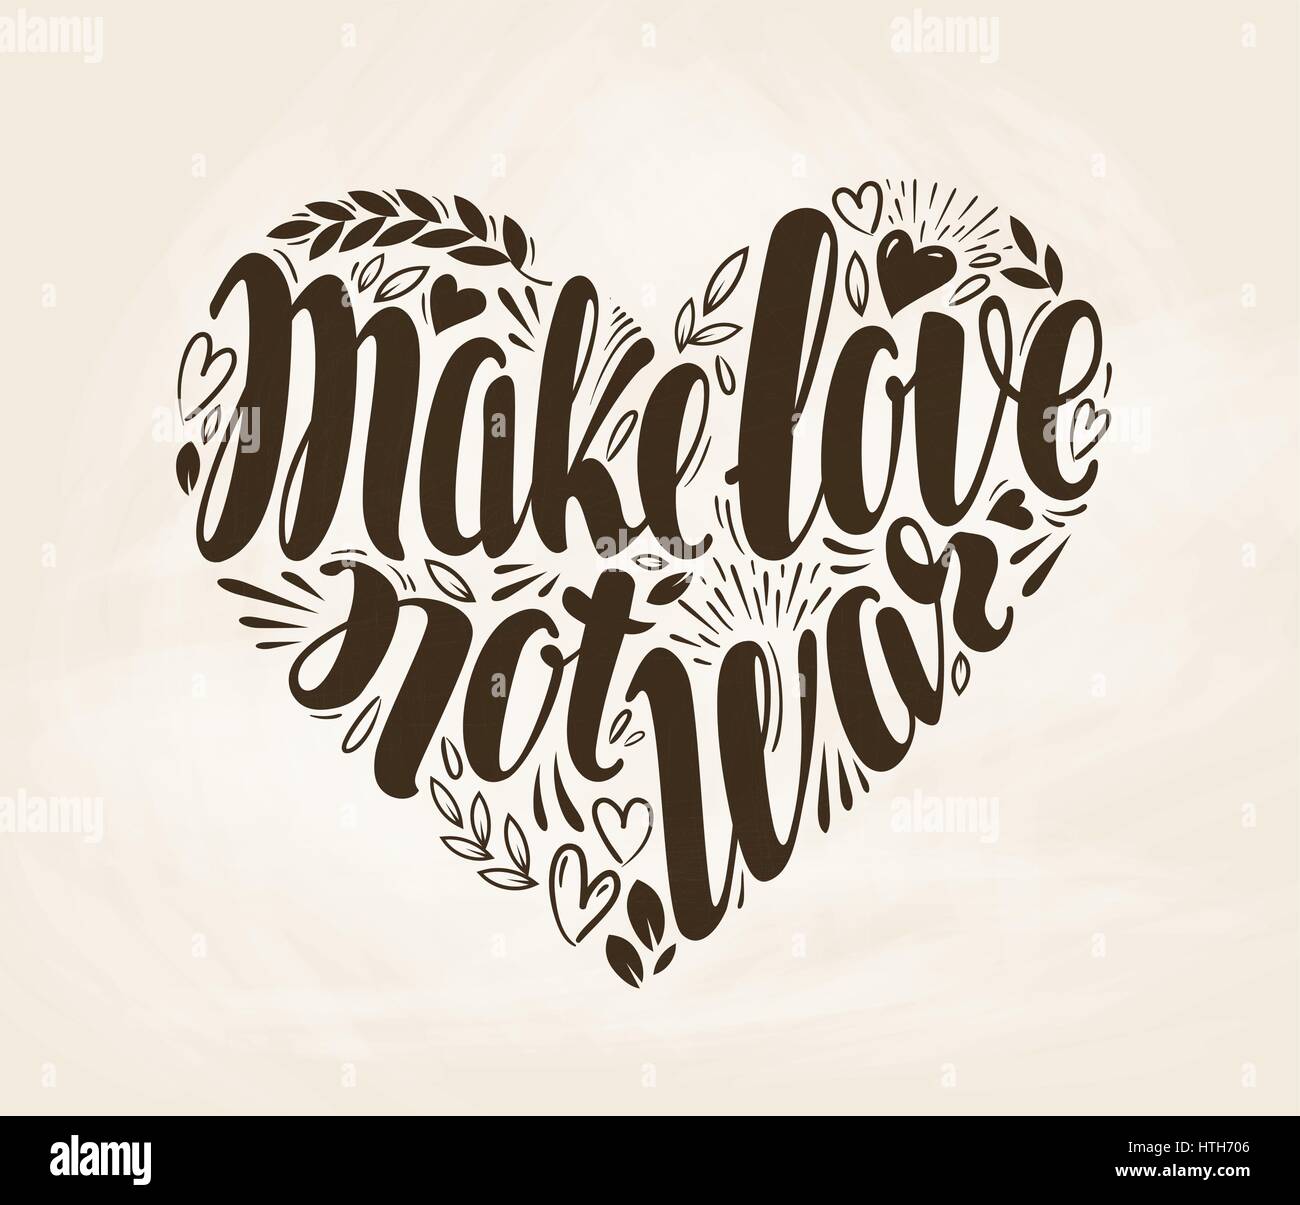 Machen Sie Liebe nicht Krieg, beschriften. Schriftzug, Kalligraphie in Form von Herzen. Dekorative Vektor-illustration Stock Vektor